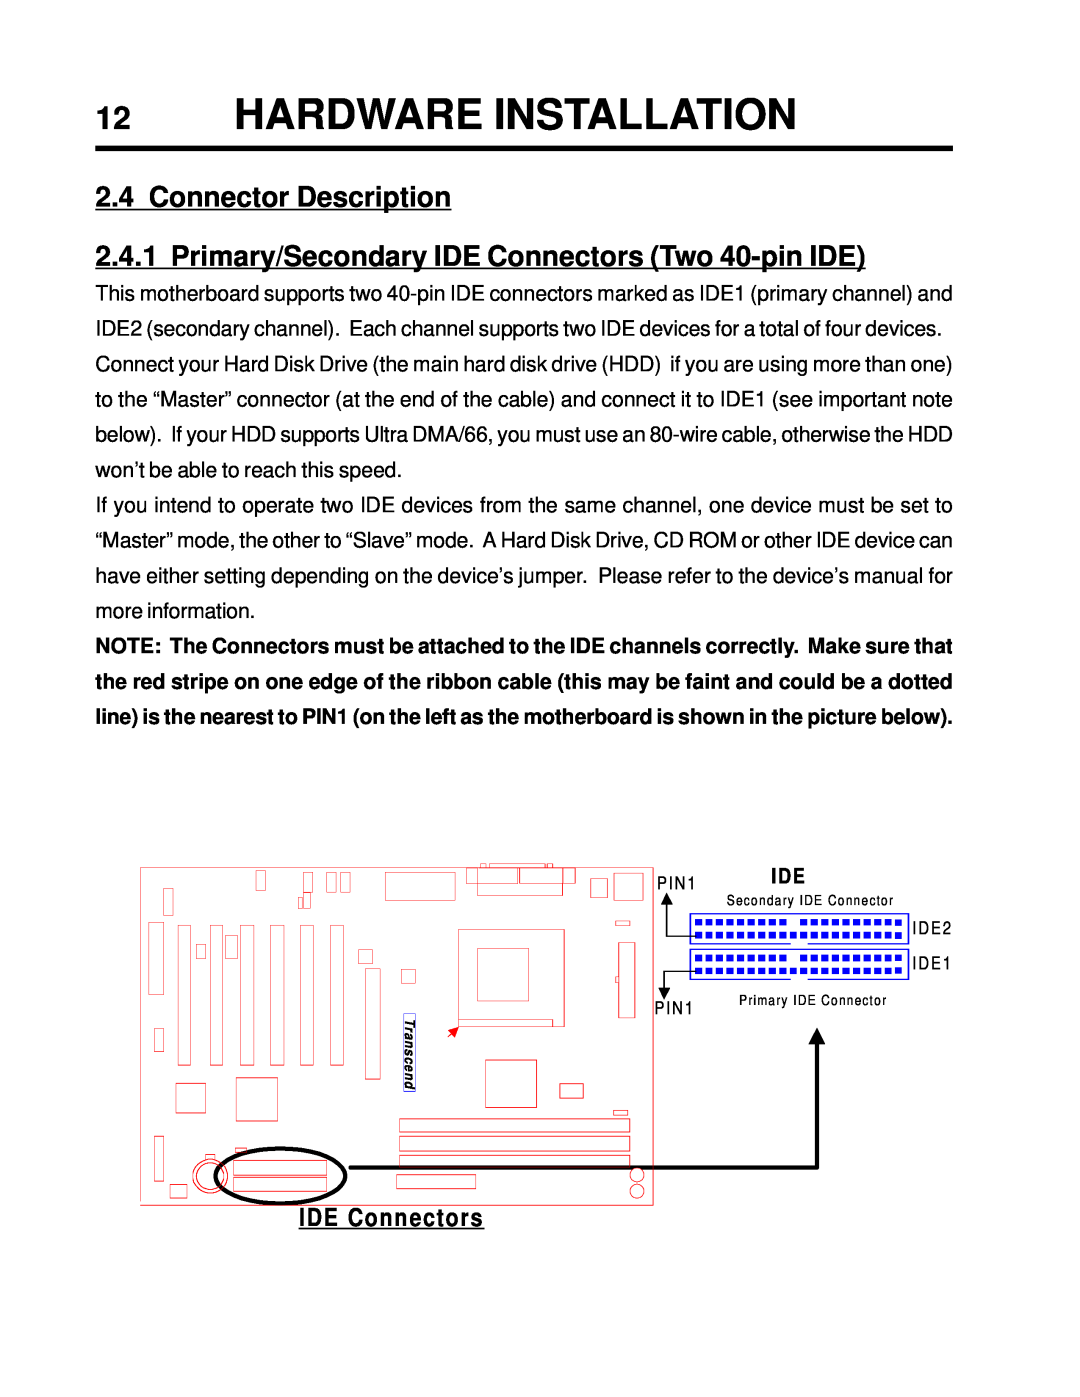 Intel TS-ASP3 user manual Hardware Installation, Connector Description, IDE Connectors 